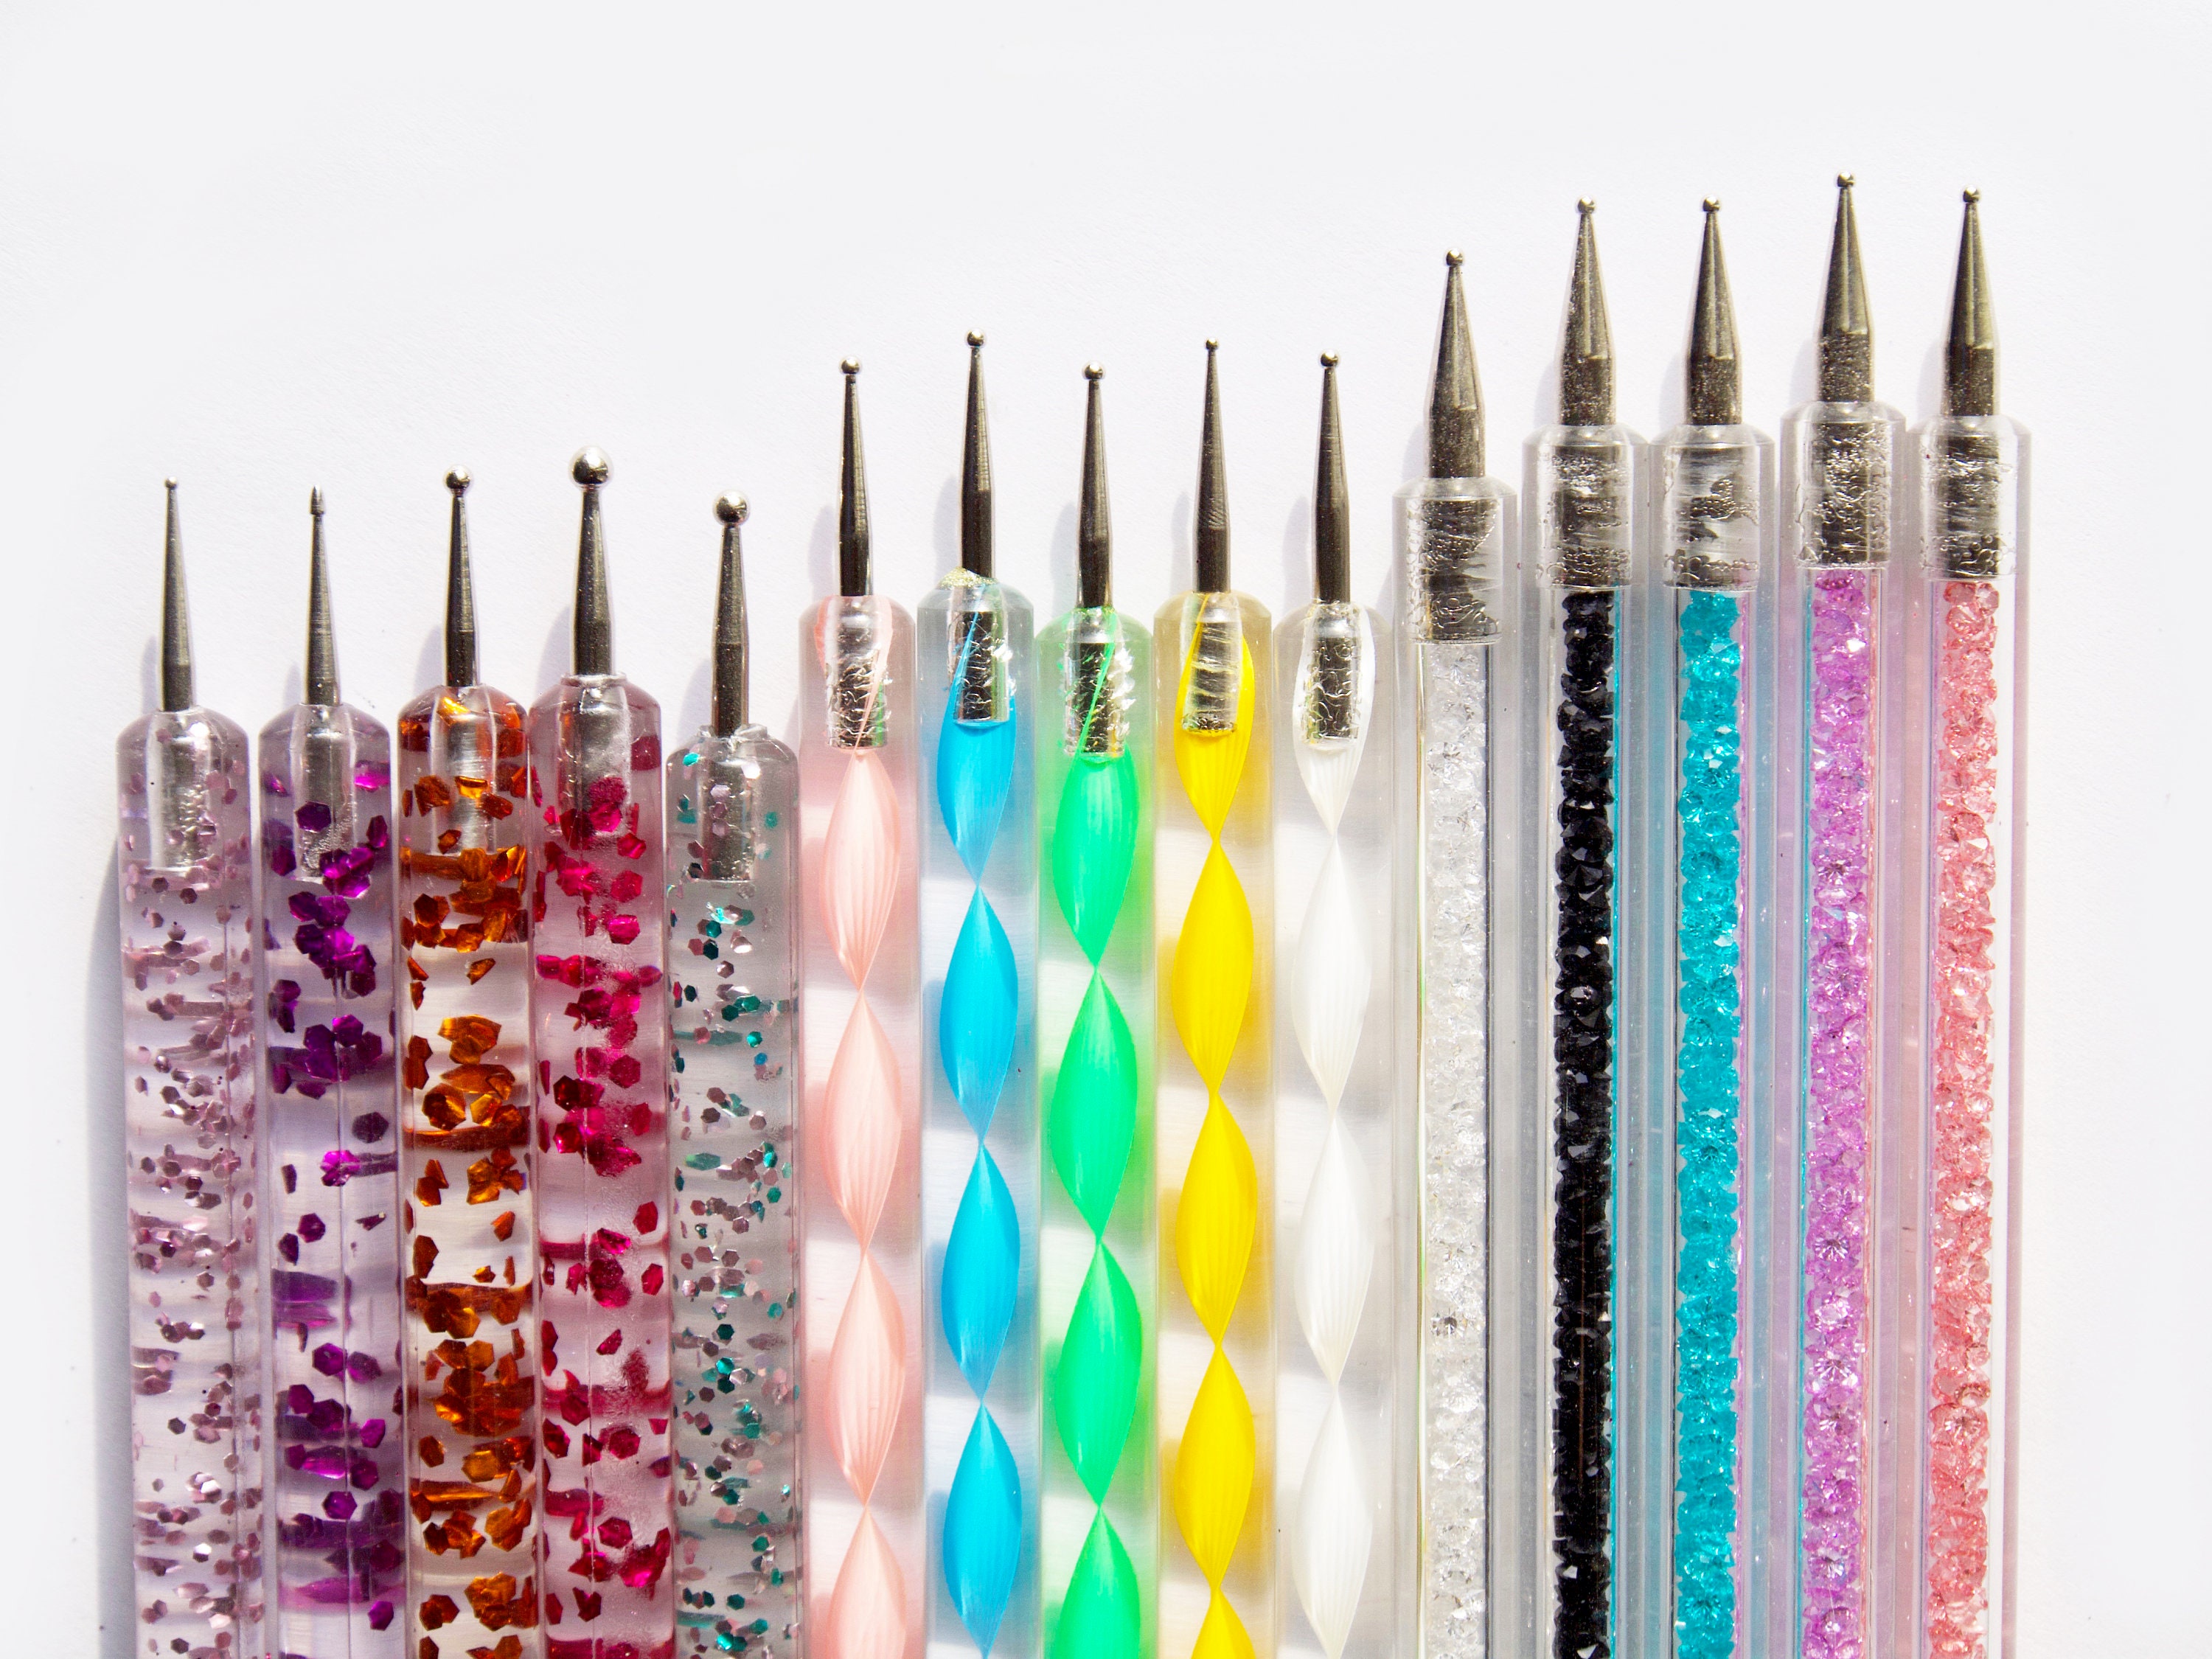 PINK Sculpting Pens / Dotting Tools / Nail Art Pens (Set of 5)